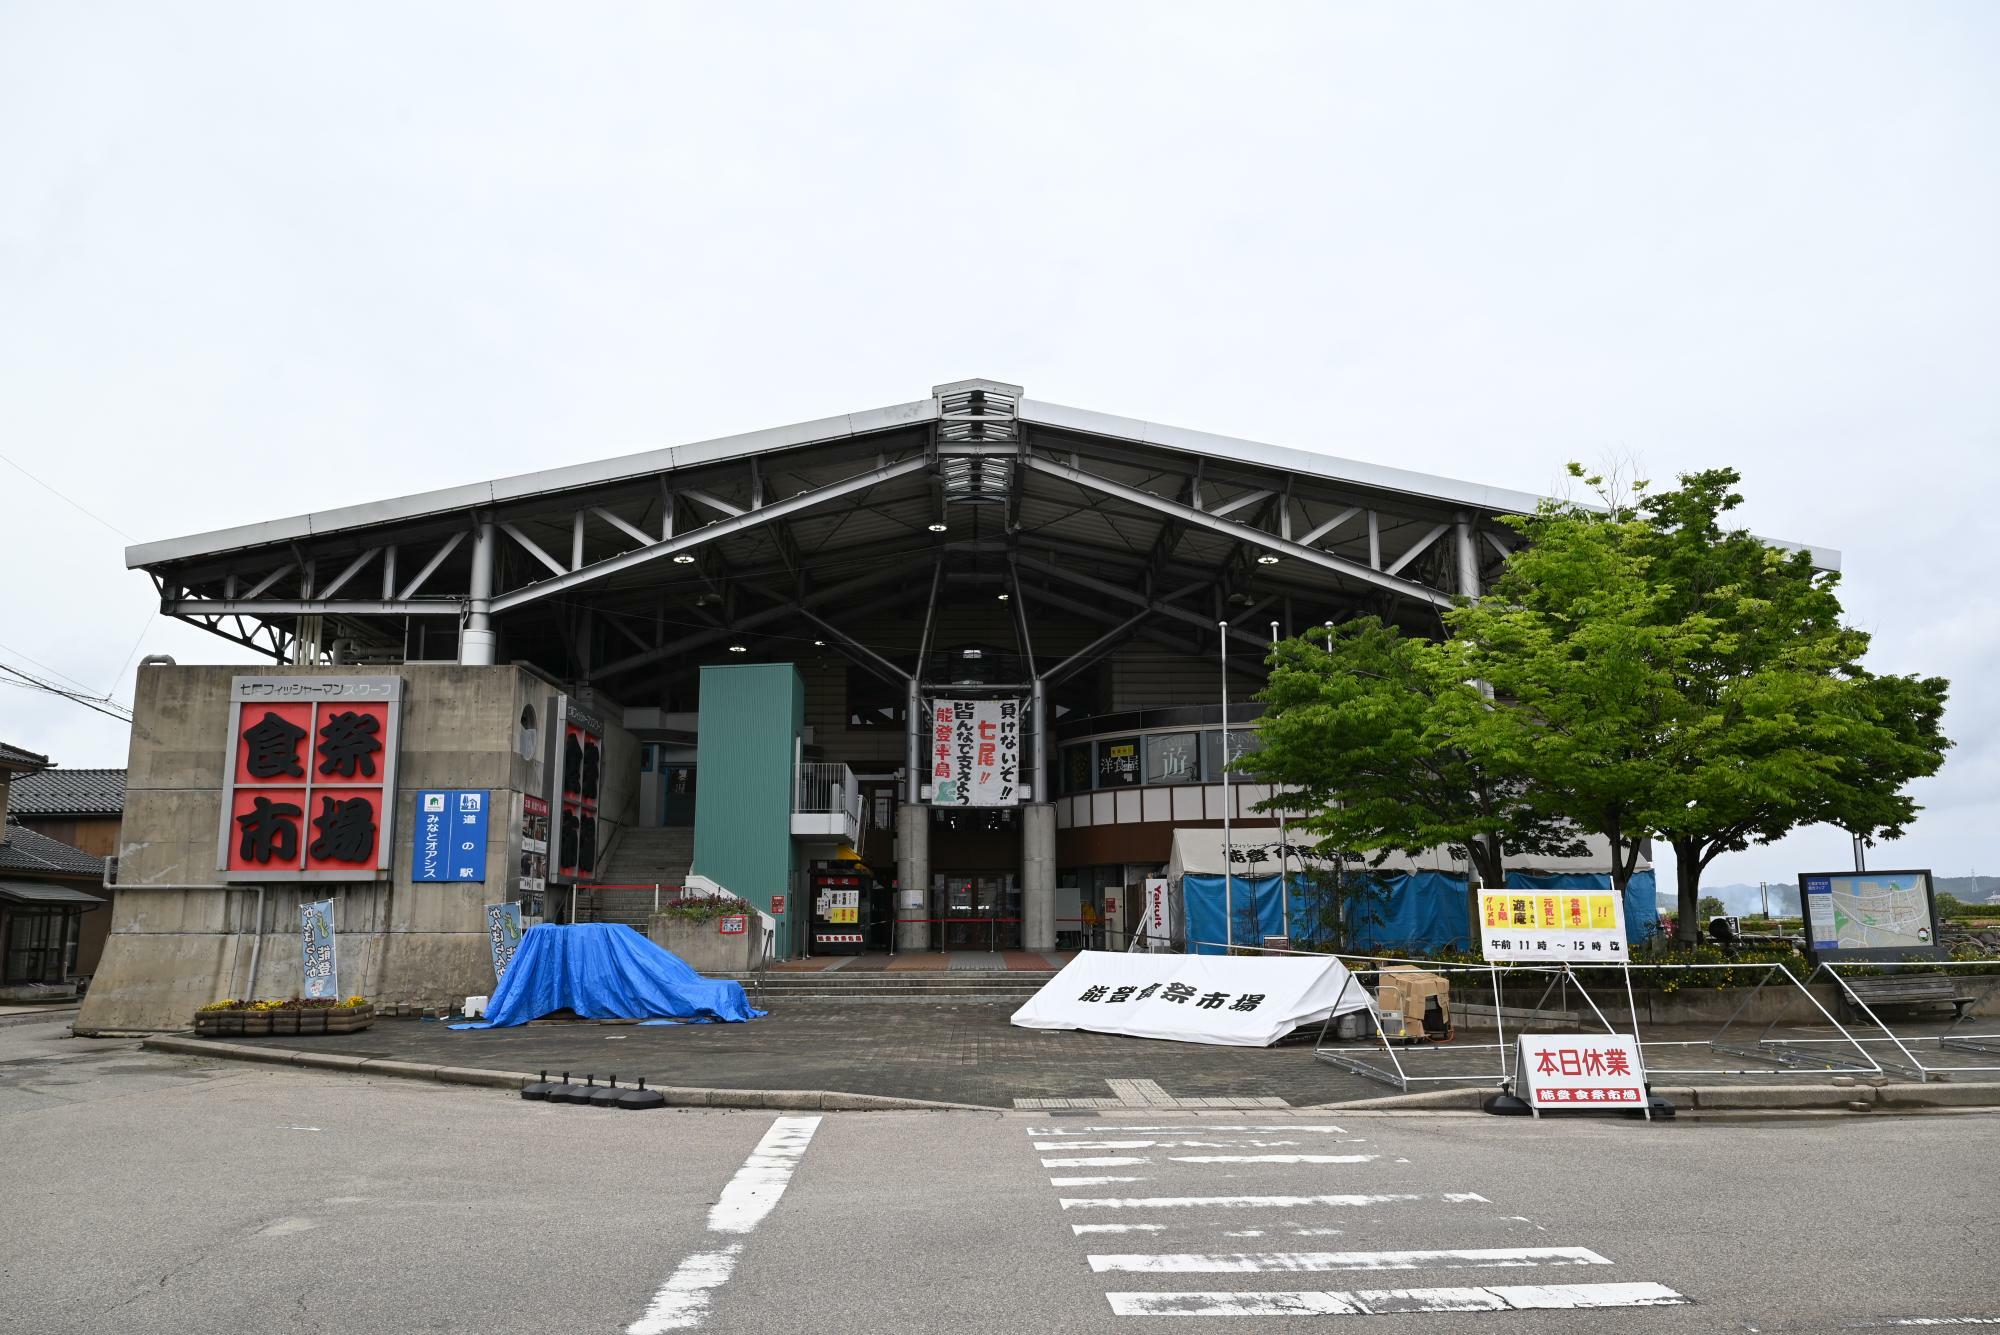 『君ソム』の主な舞台の一つ、七尾市の「道の駅 能登食祭市場」。震災を受けて休業が続いている